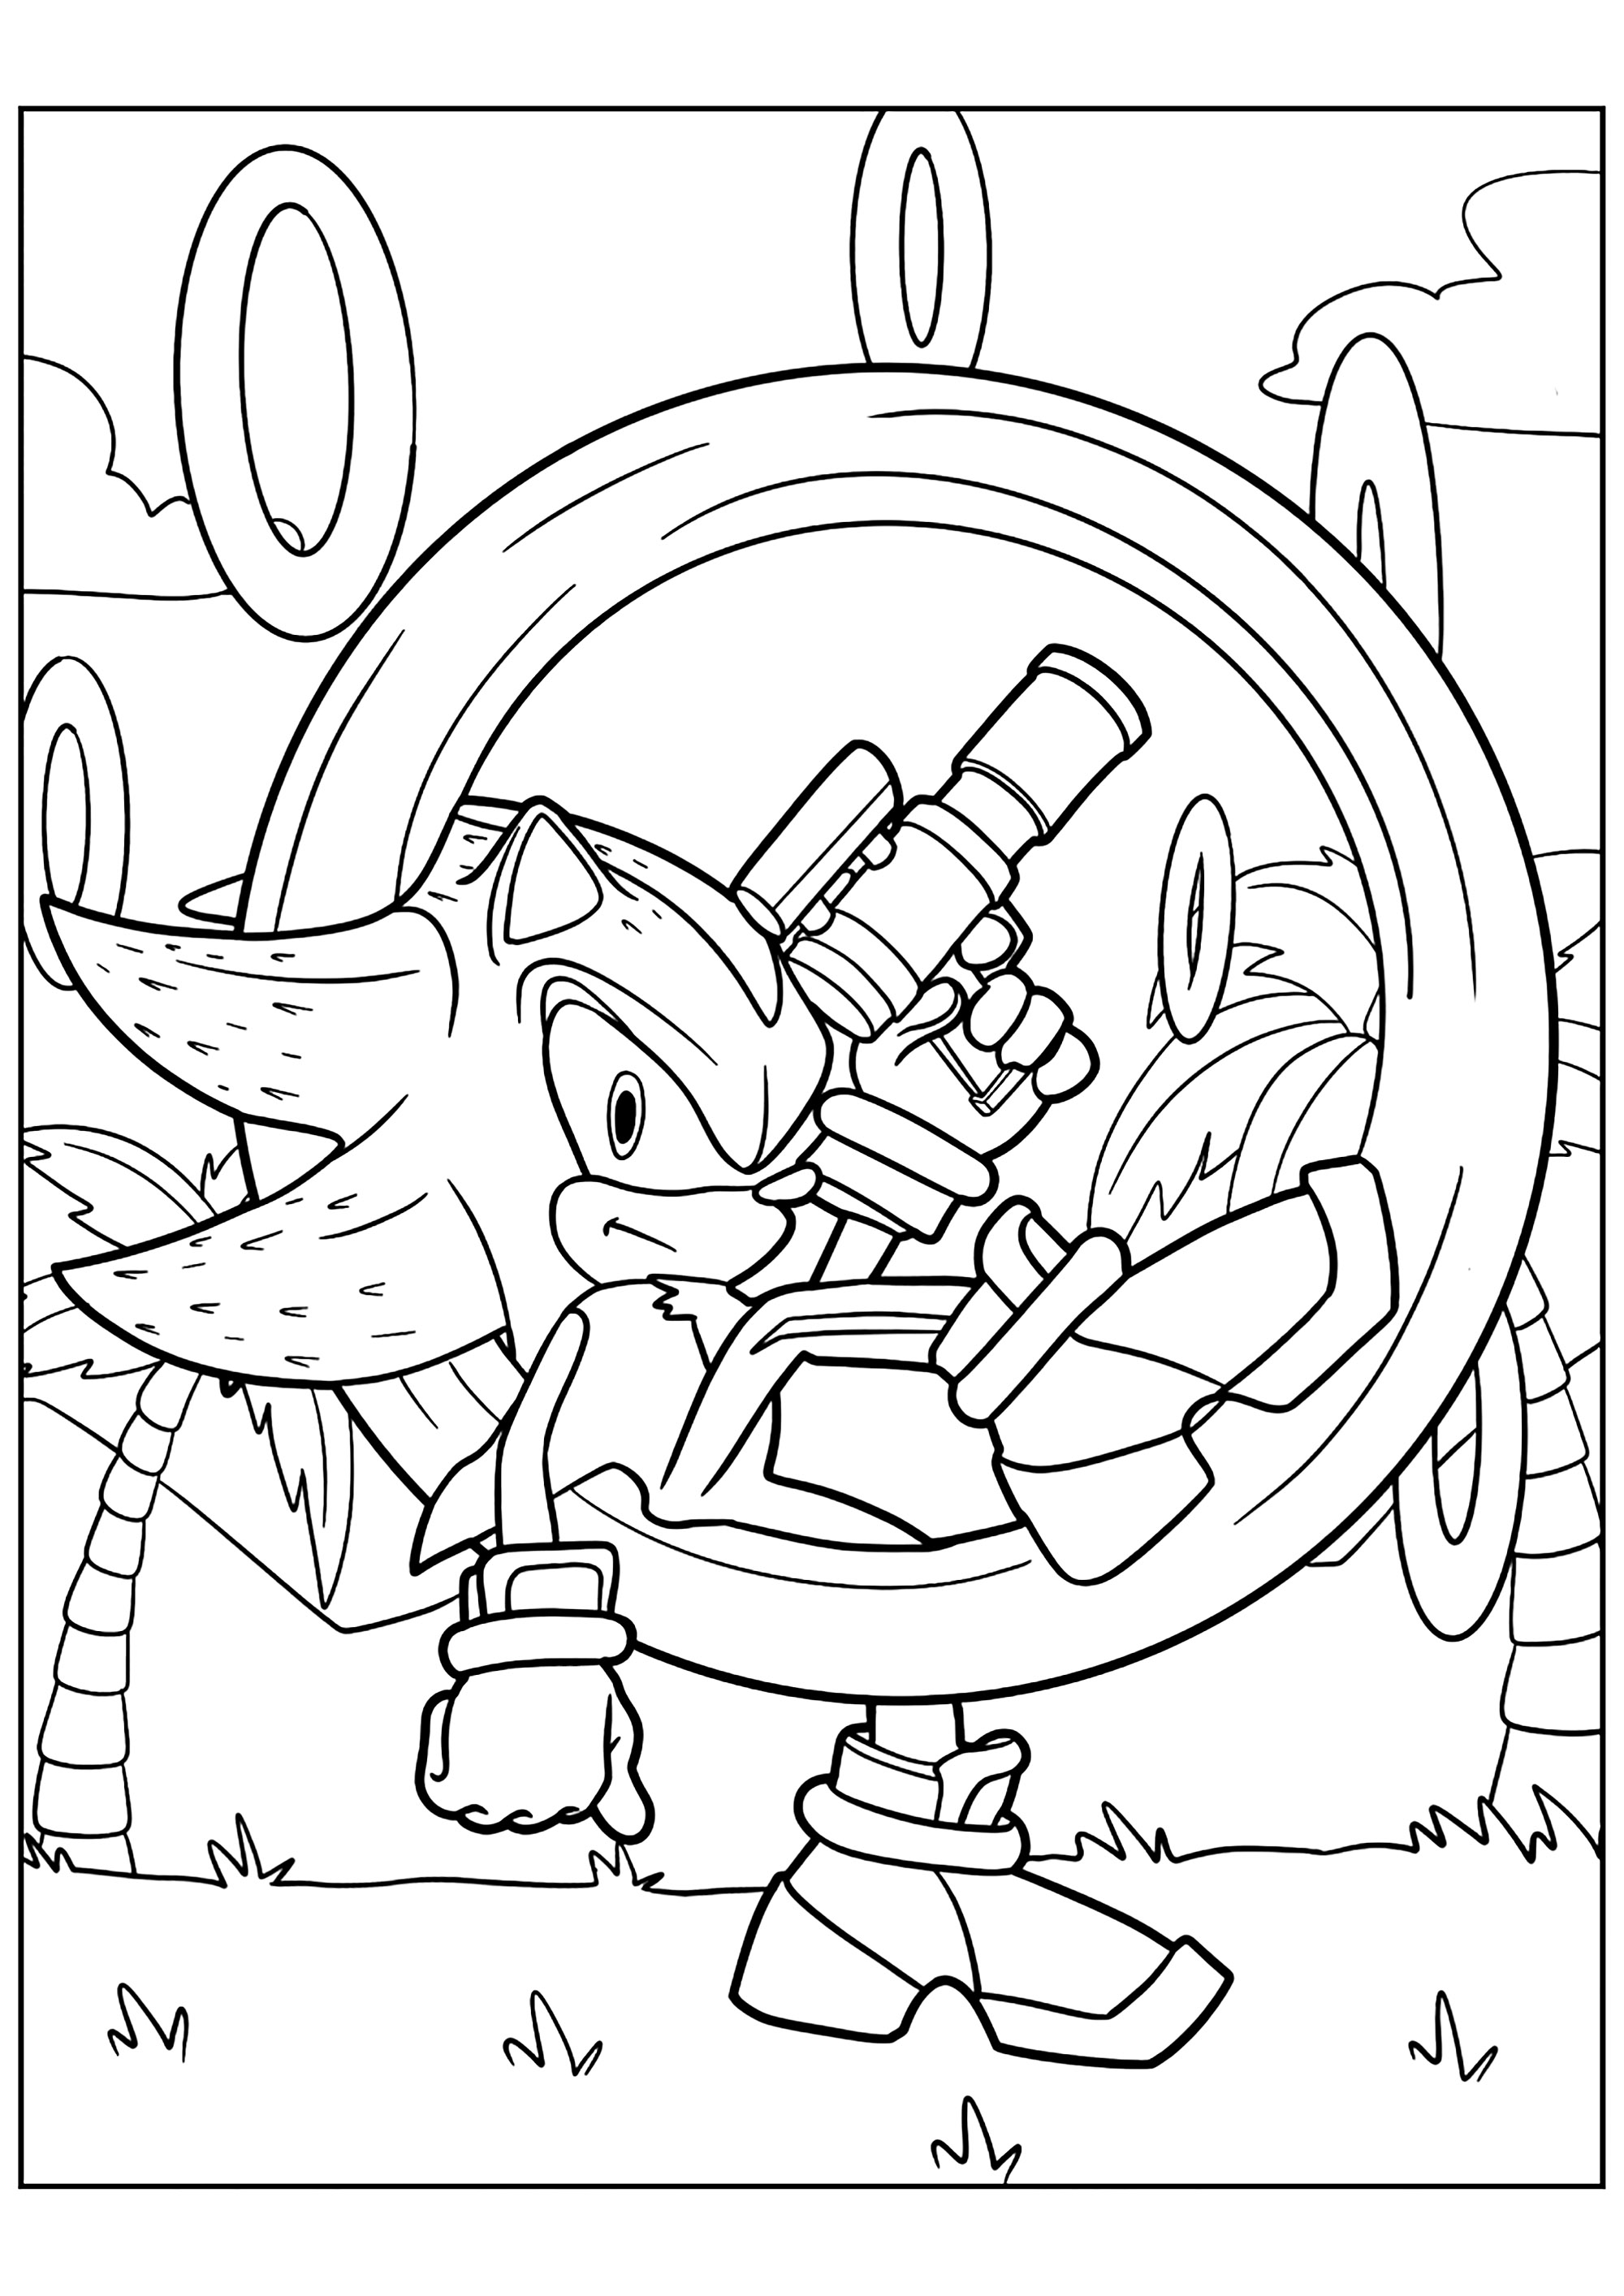 Shadow, um personagem do Sonic para colorir e imprimir